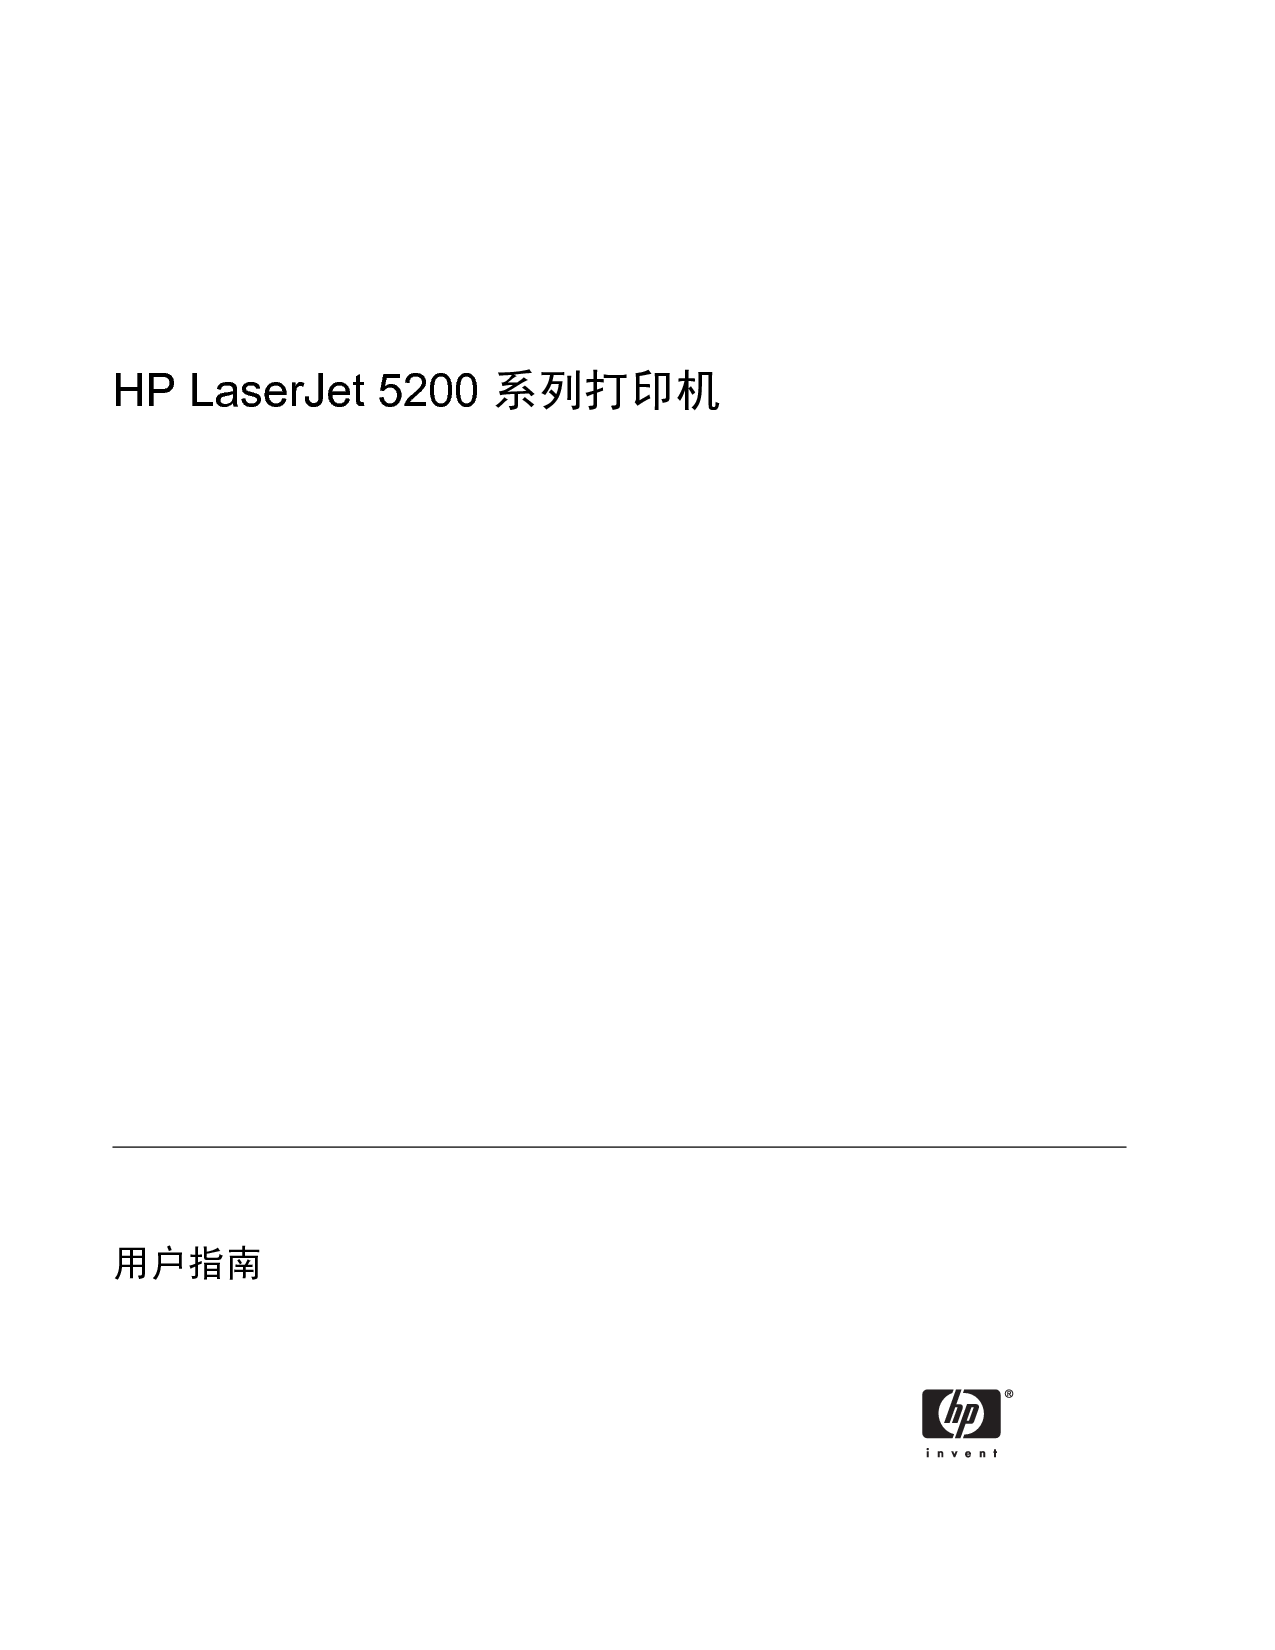 惠普 HP LaserJet 5200 用户指南 第2页